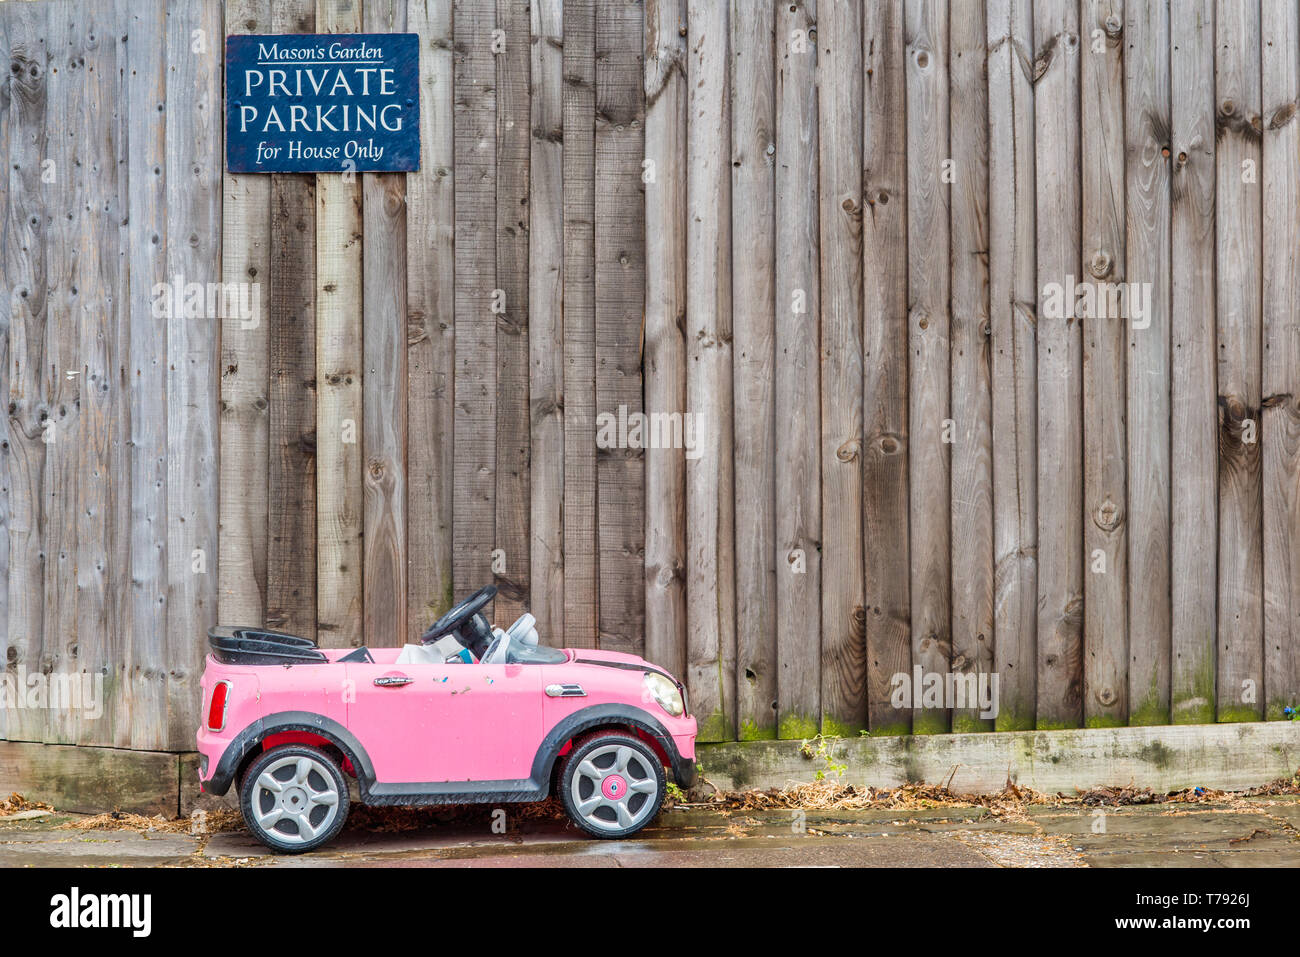 Imagen humorística de un pequeño coche de juguete del niño estacionados debajo de signo de aparcamiento privado. Visto en Cambridge, Inglaterra, Reino Unido. Foto de stock